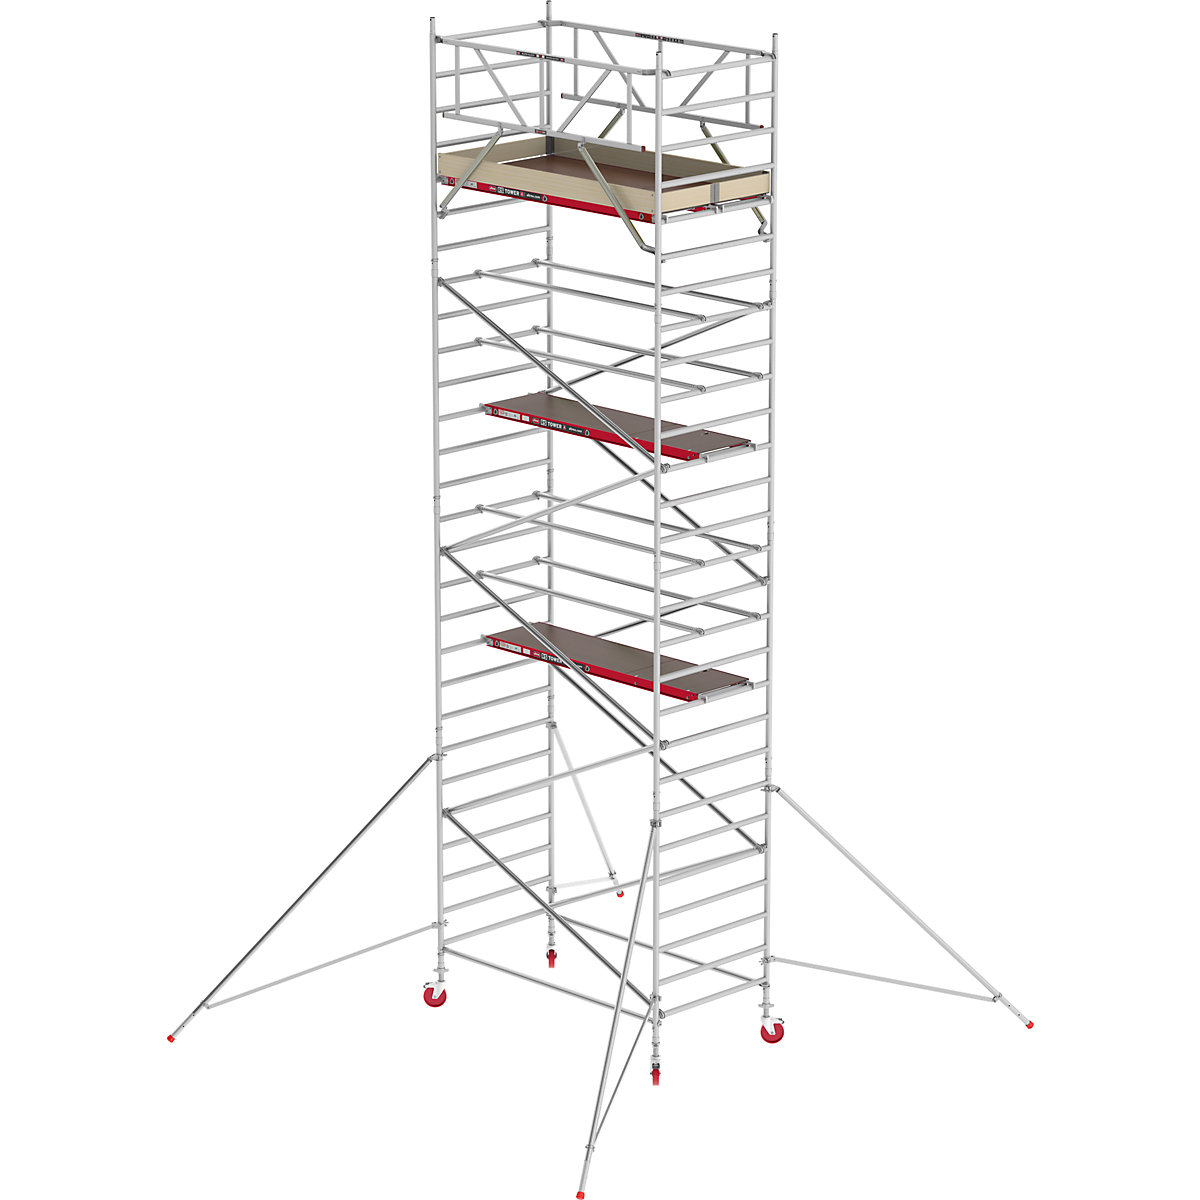 Fahrgerüst RS TOWER 42 breit Altrex, Holzplattform, Länge 1,85 m, Arbeitshöhe 9,20 m